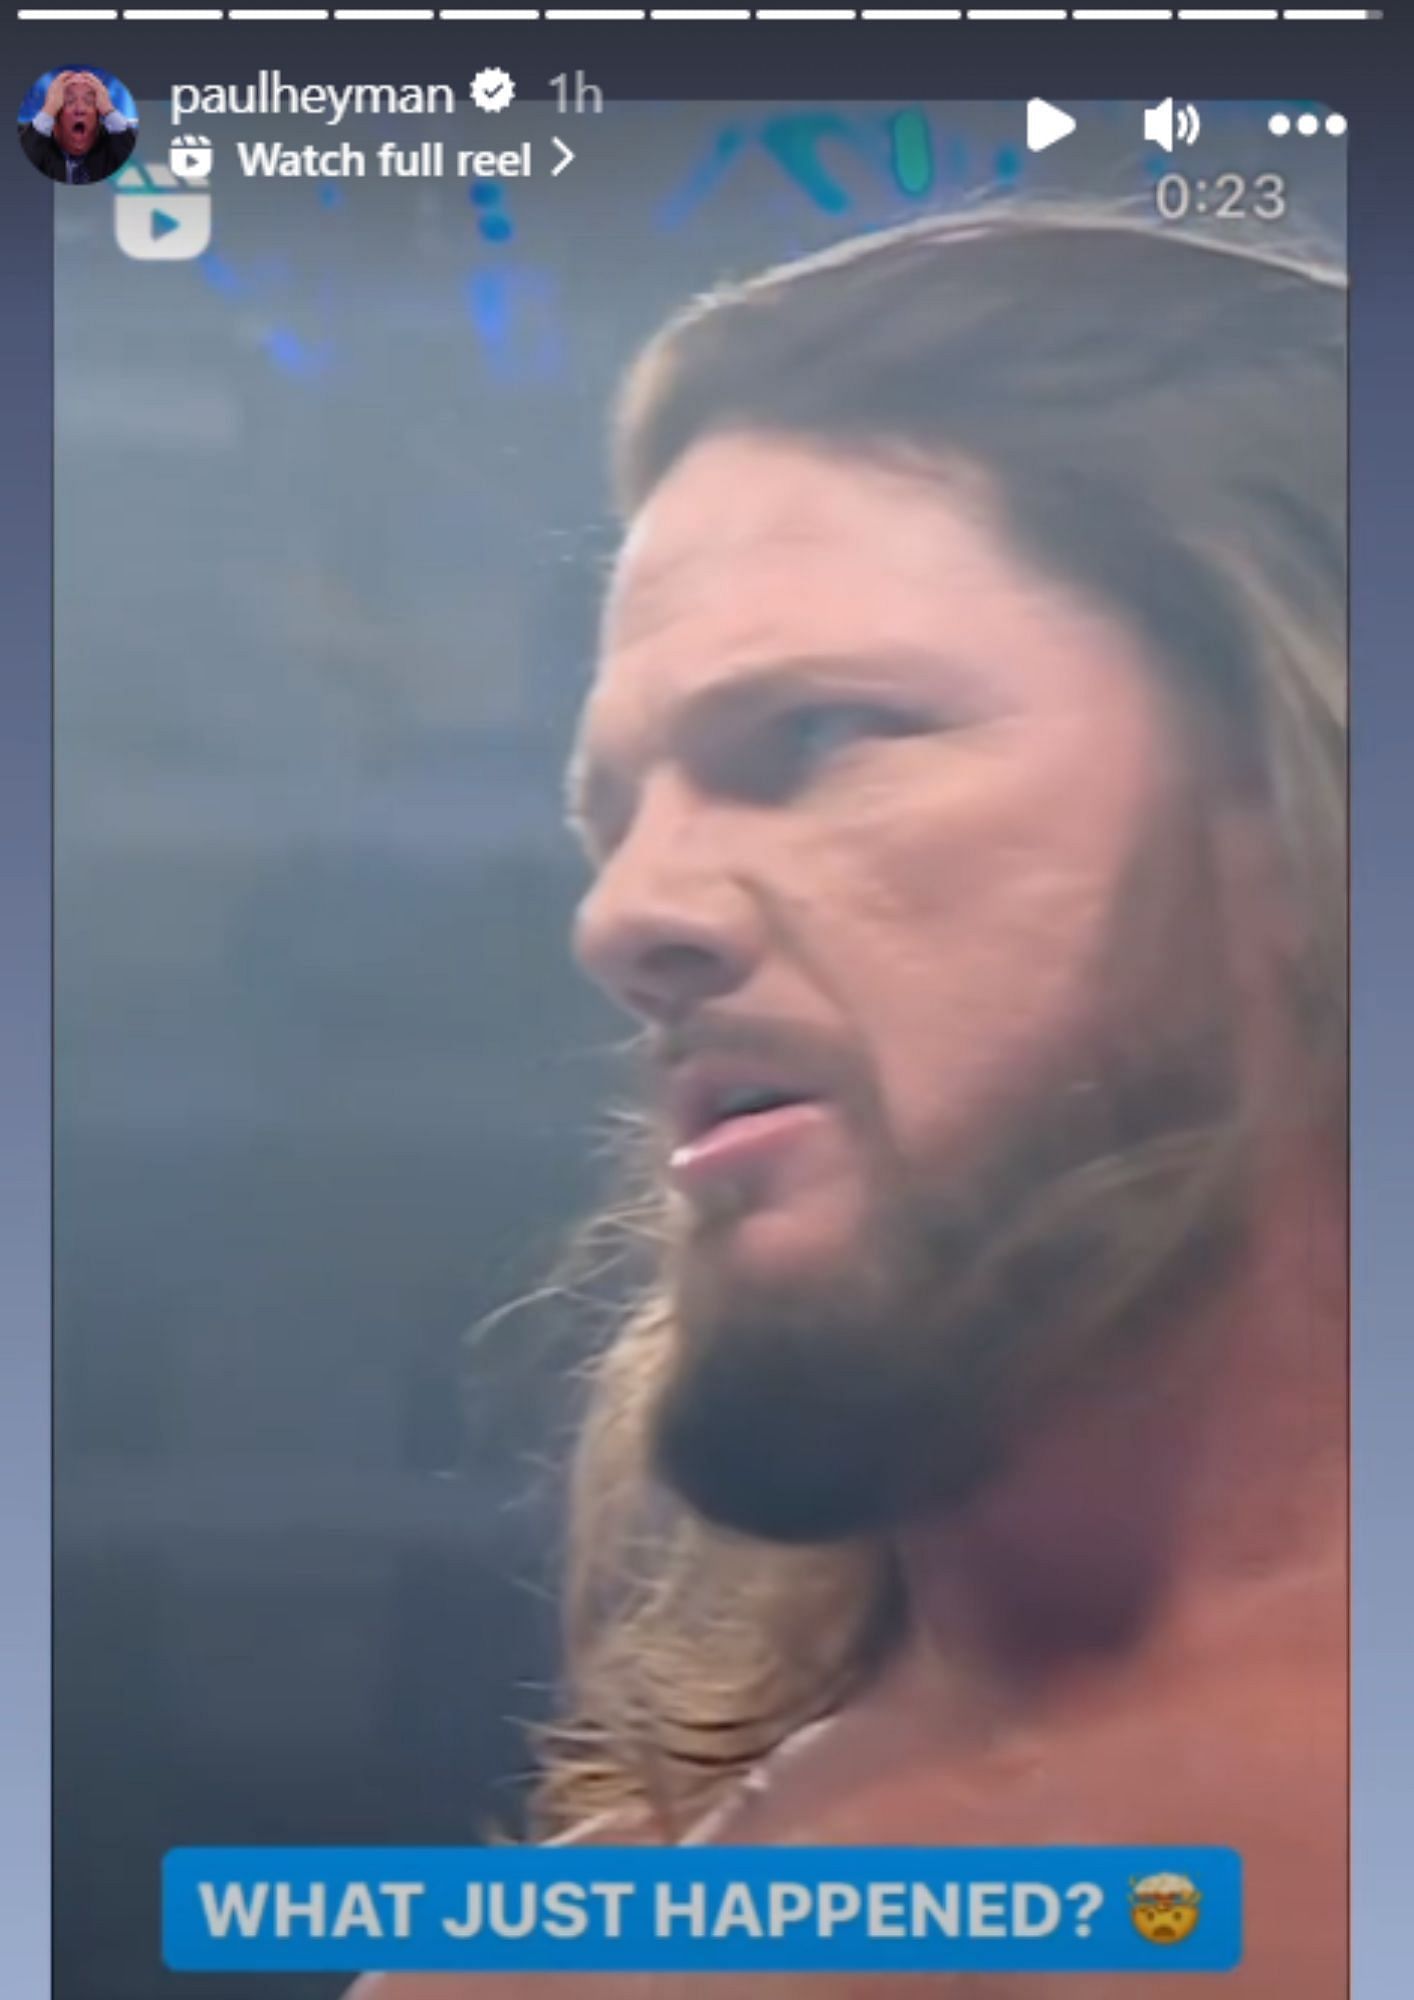 Did AJ Styles turn heel?